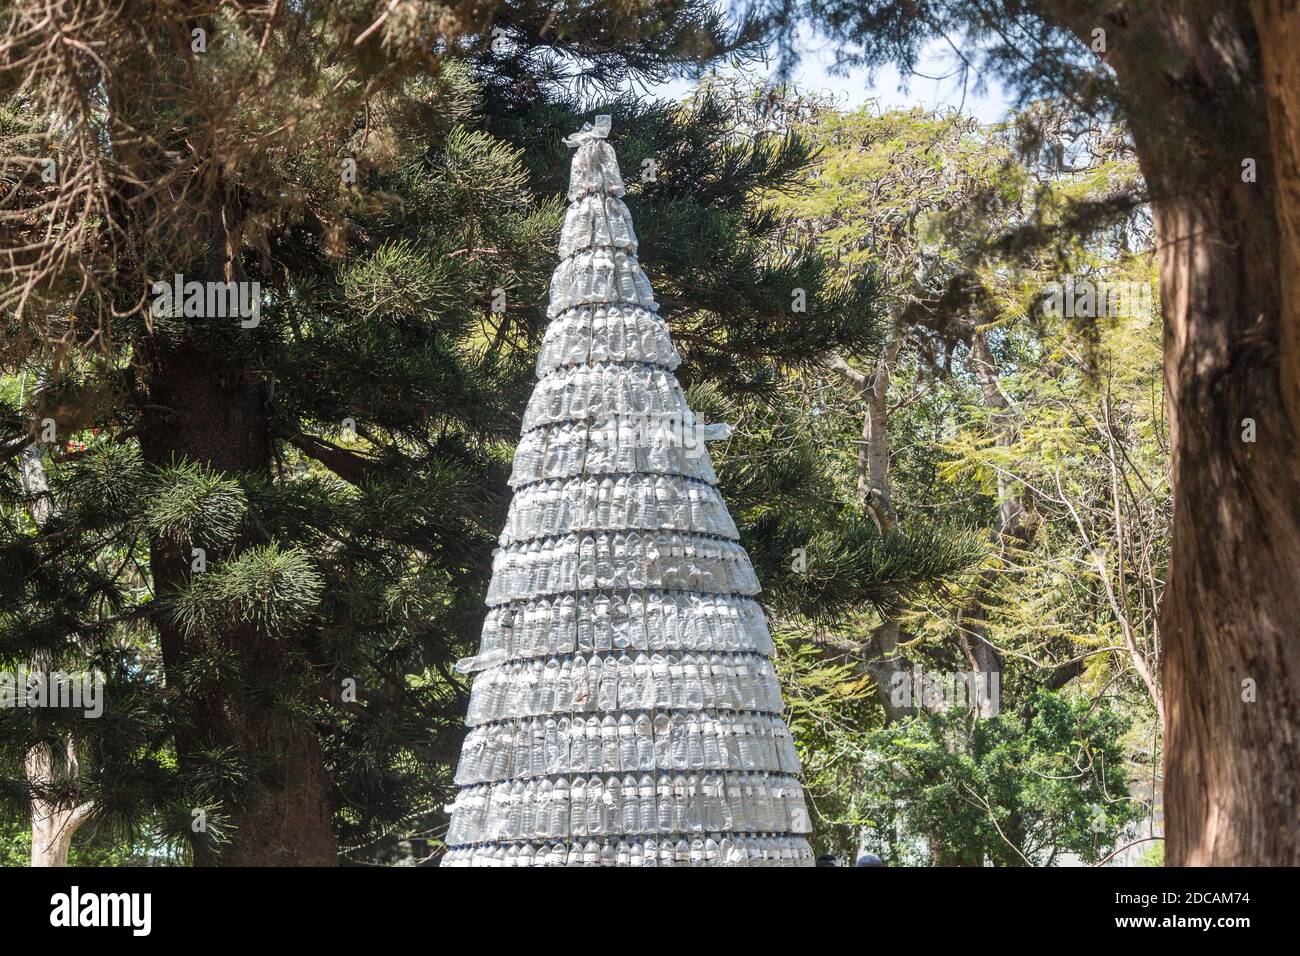 Weihnachtsbaum aus weggeworfenen und recycelten Plastikflaschen Stockfoto